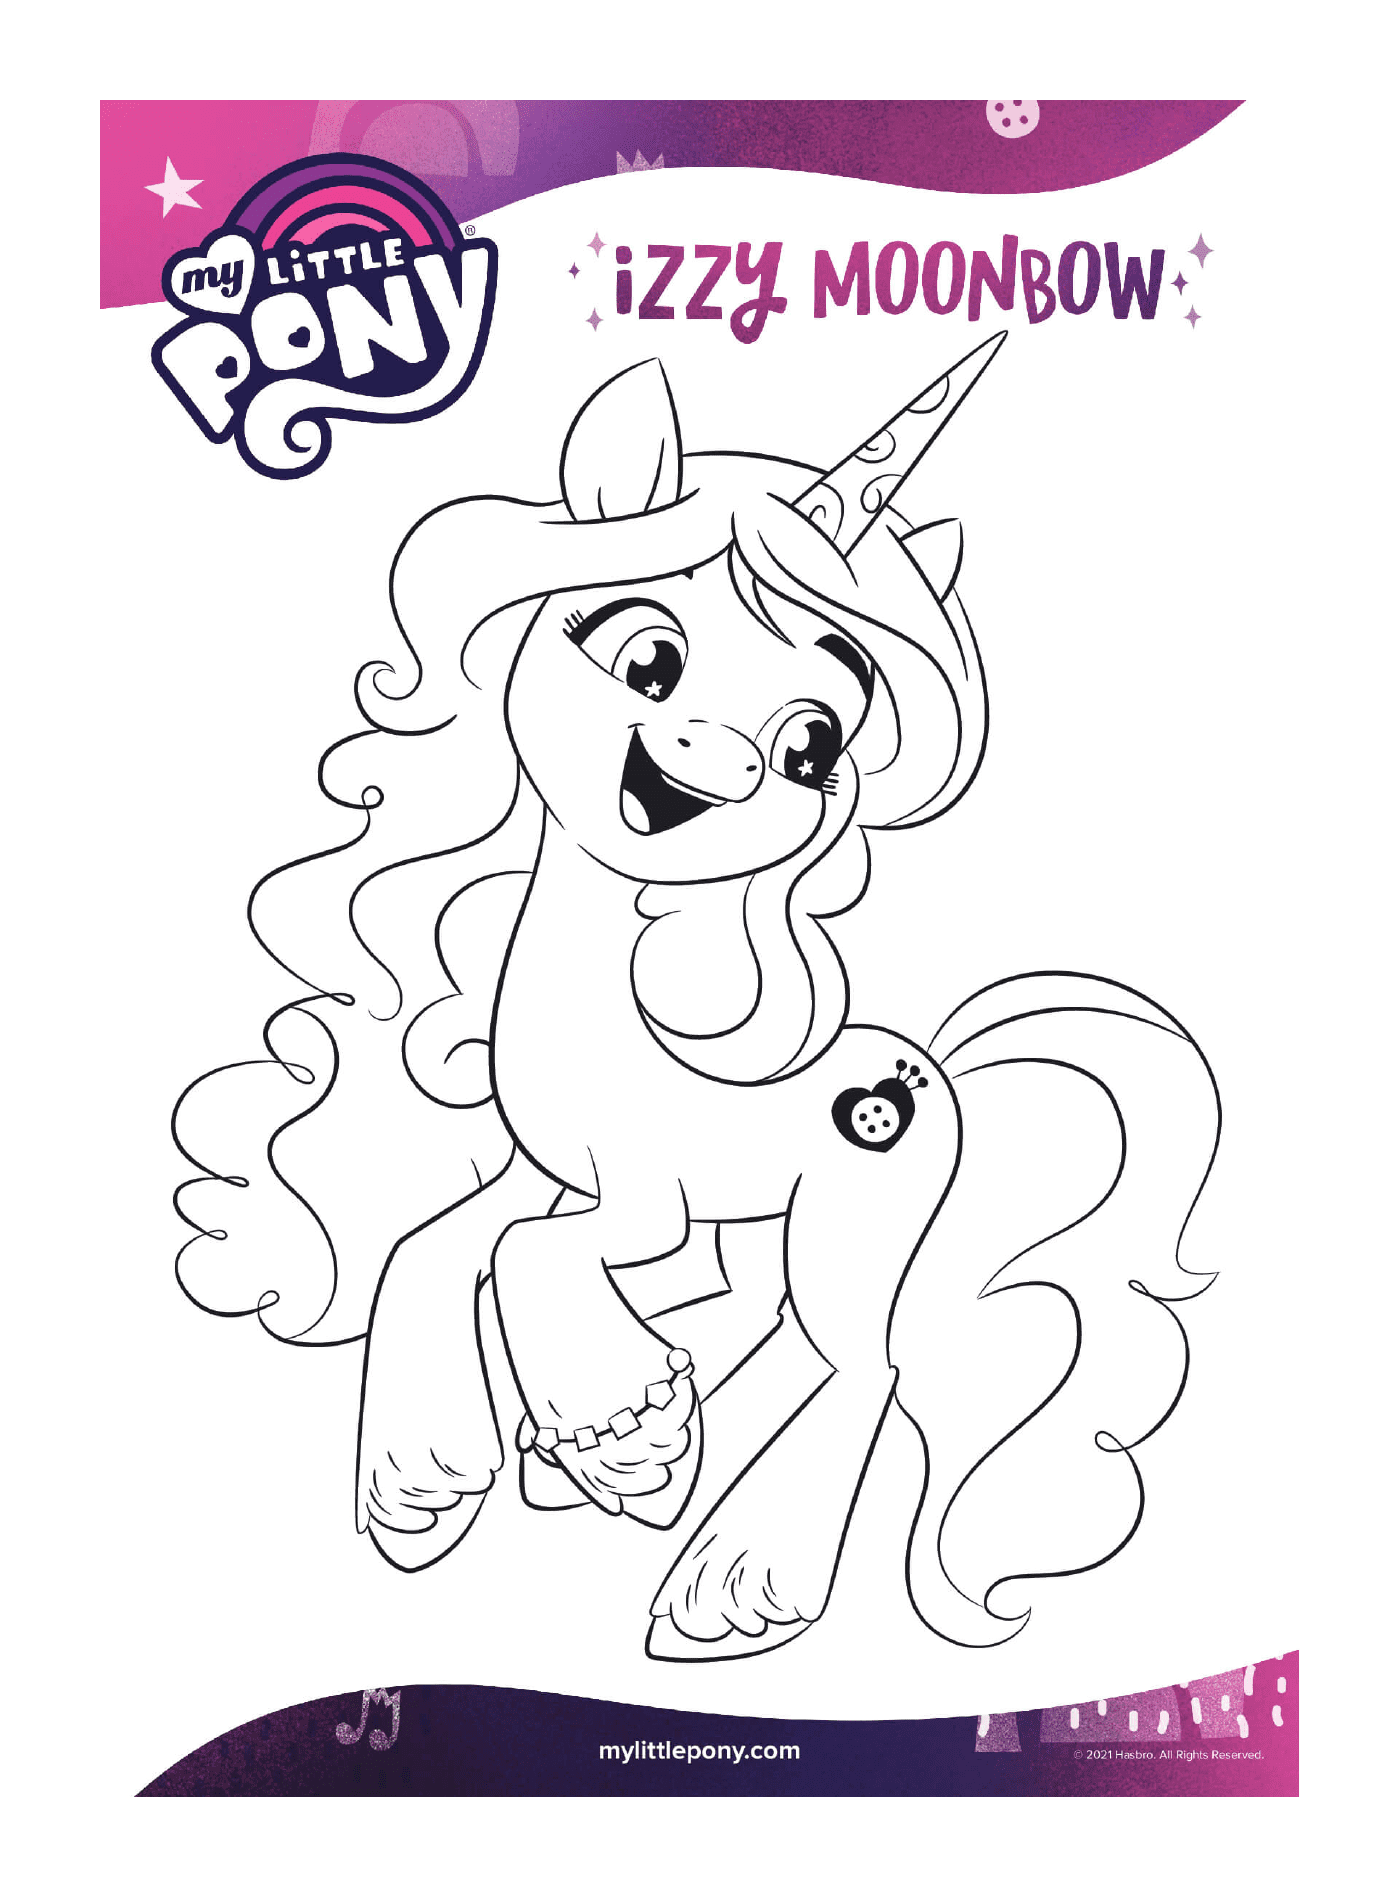  Süßes Pony, voller Energie 